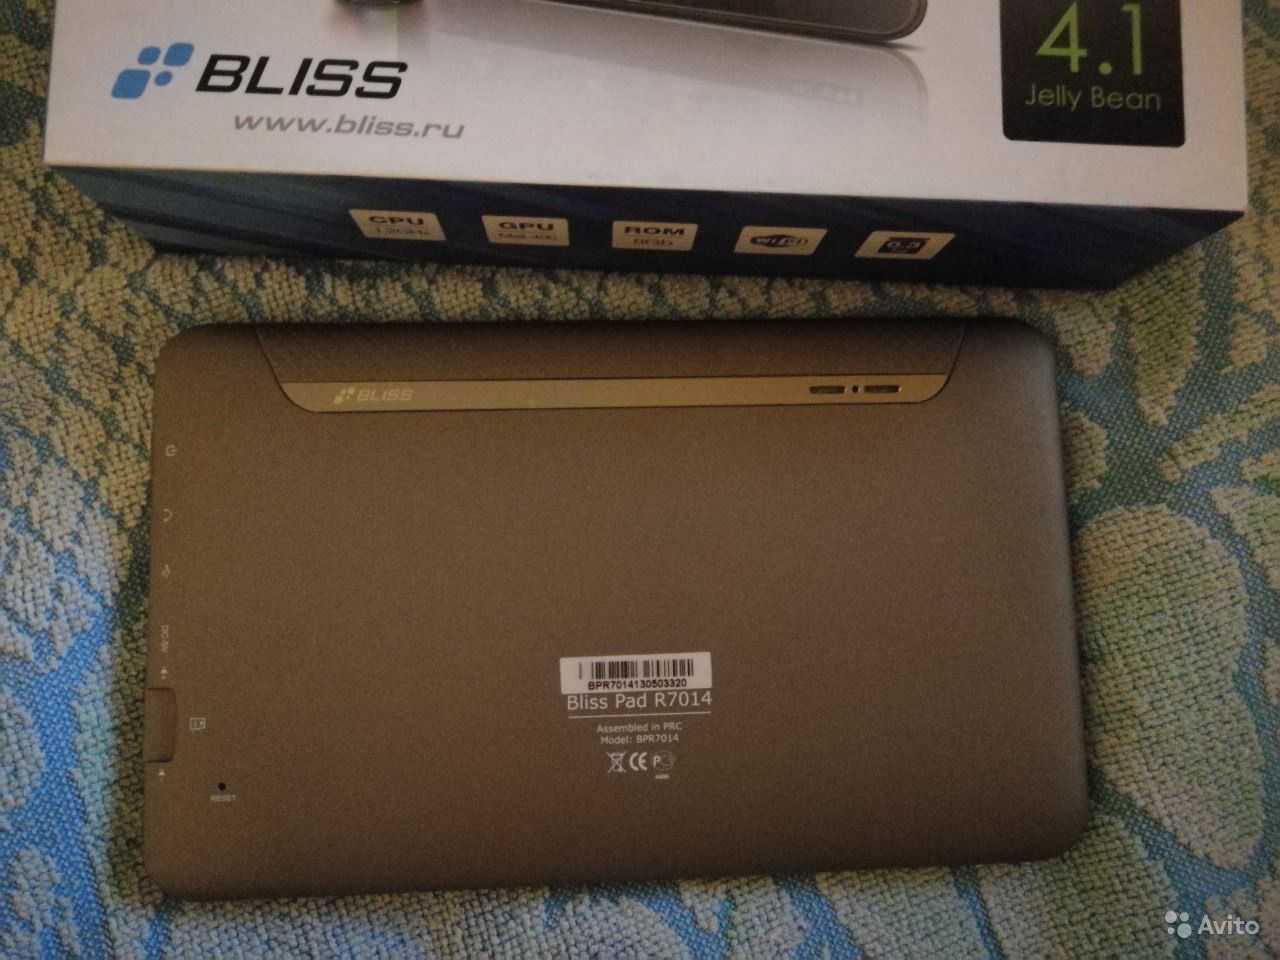 Планшет bliss pad r8015 — купить, цена и характеристики, отзывы